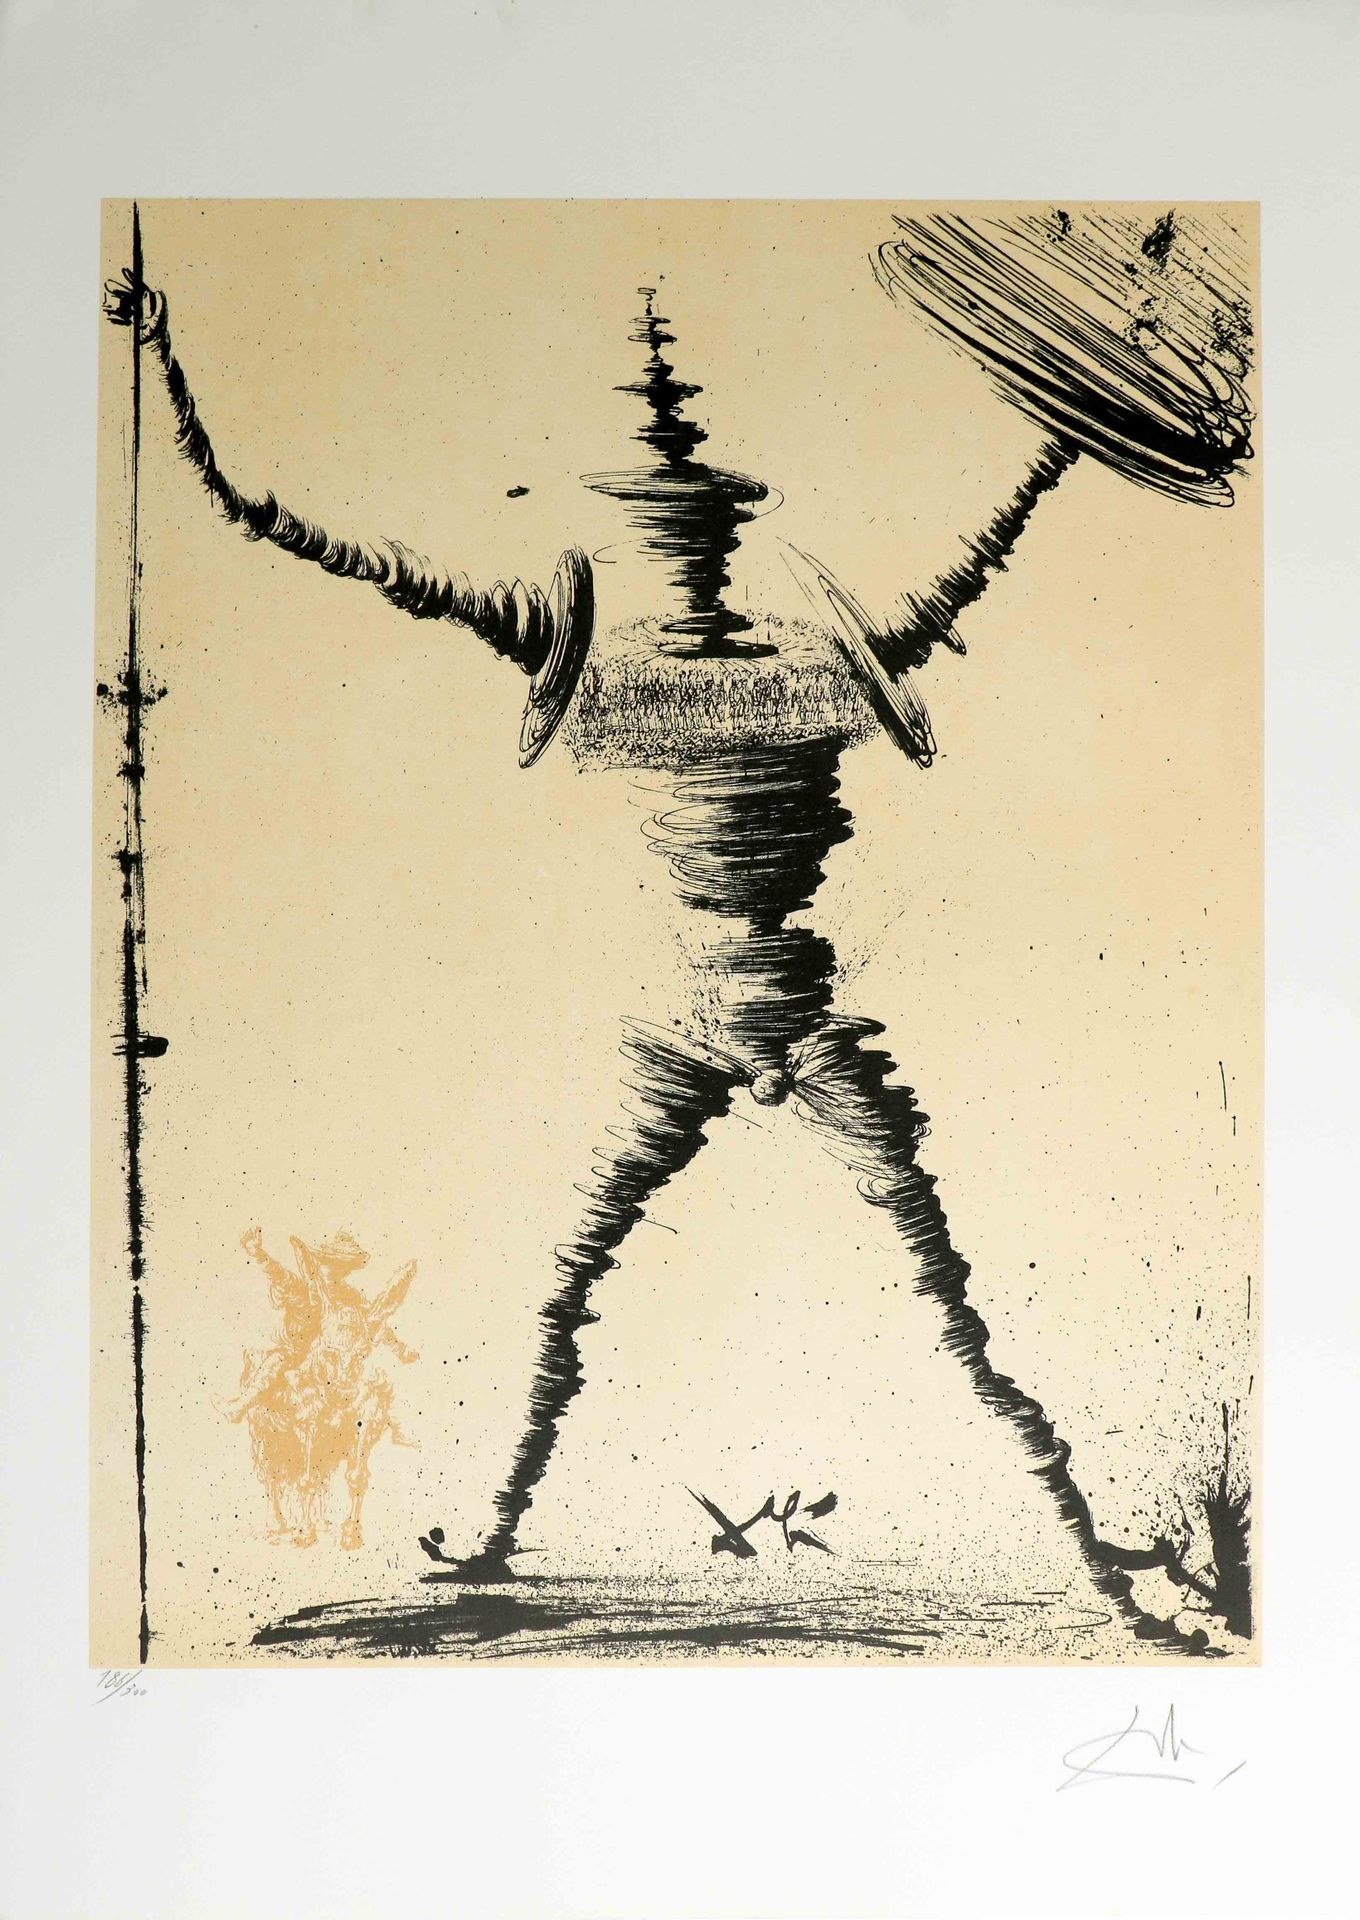 Null 萨尔瓦多-达利(1904-1989)《堂吉诃德》(堂吉诃德系列) 纸上彩色石版画 右下方有签名 186/300 左下方有编号 76 x 55 cm